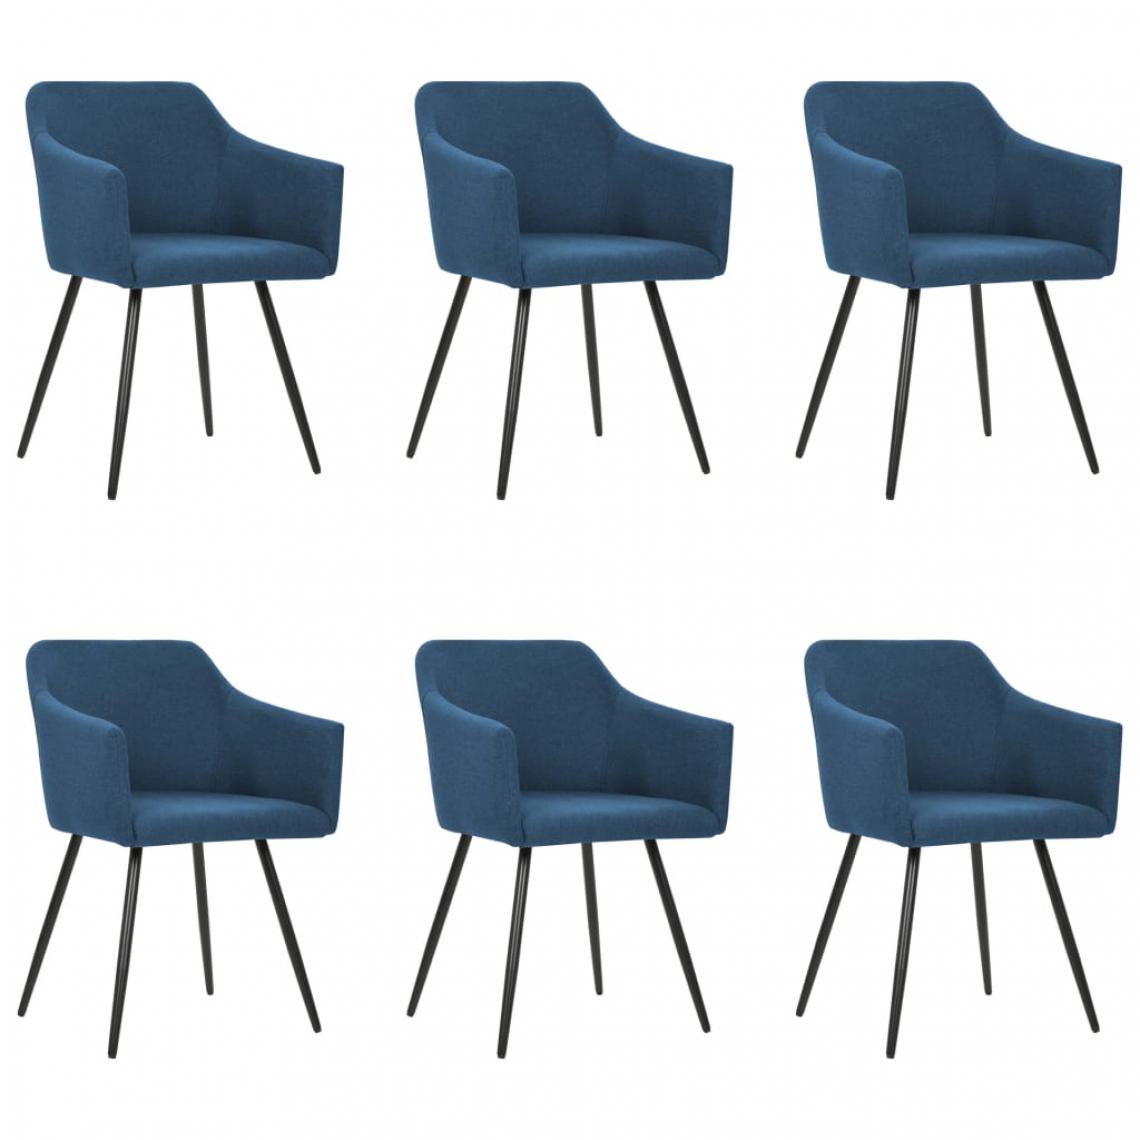 Icaverne - Splendide Fauteuils et chaises selection Libreville Chaises de salle à manger 6 pcs Bleu Tissu - Chaises